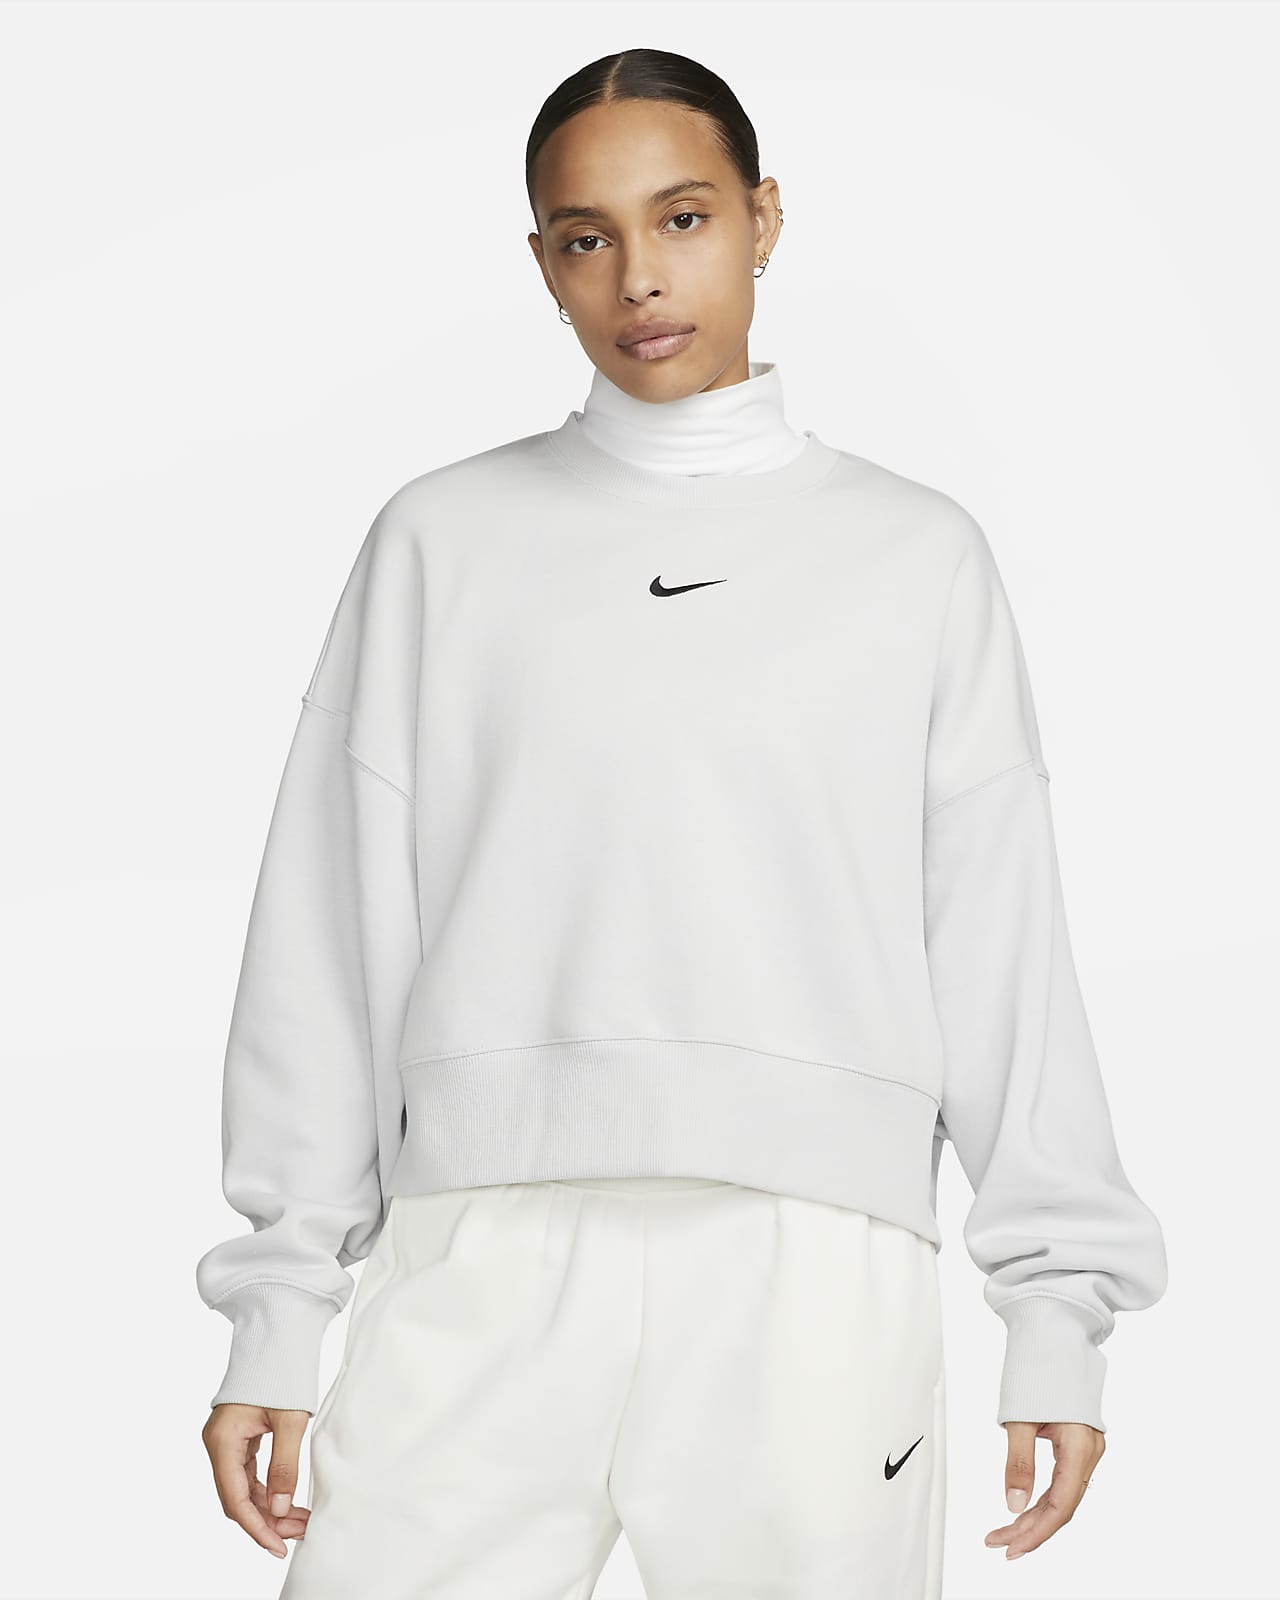 Nike Sportswear Women's Over-Oversized Sweatshirt. Nike LU